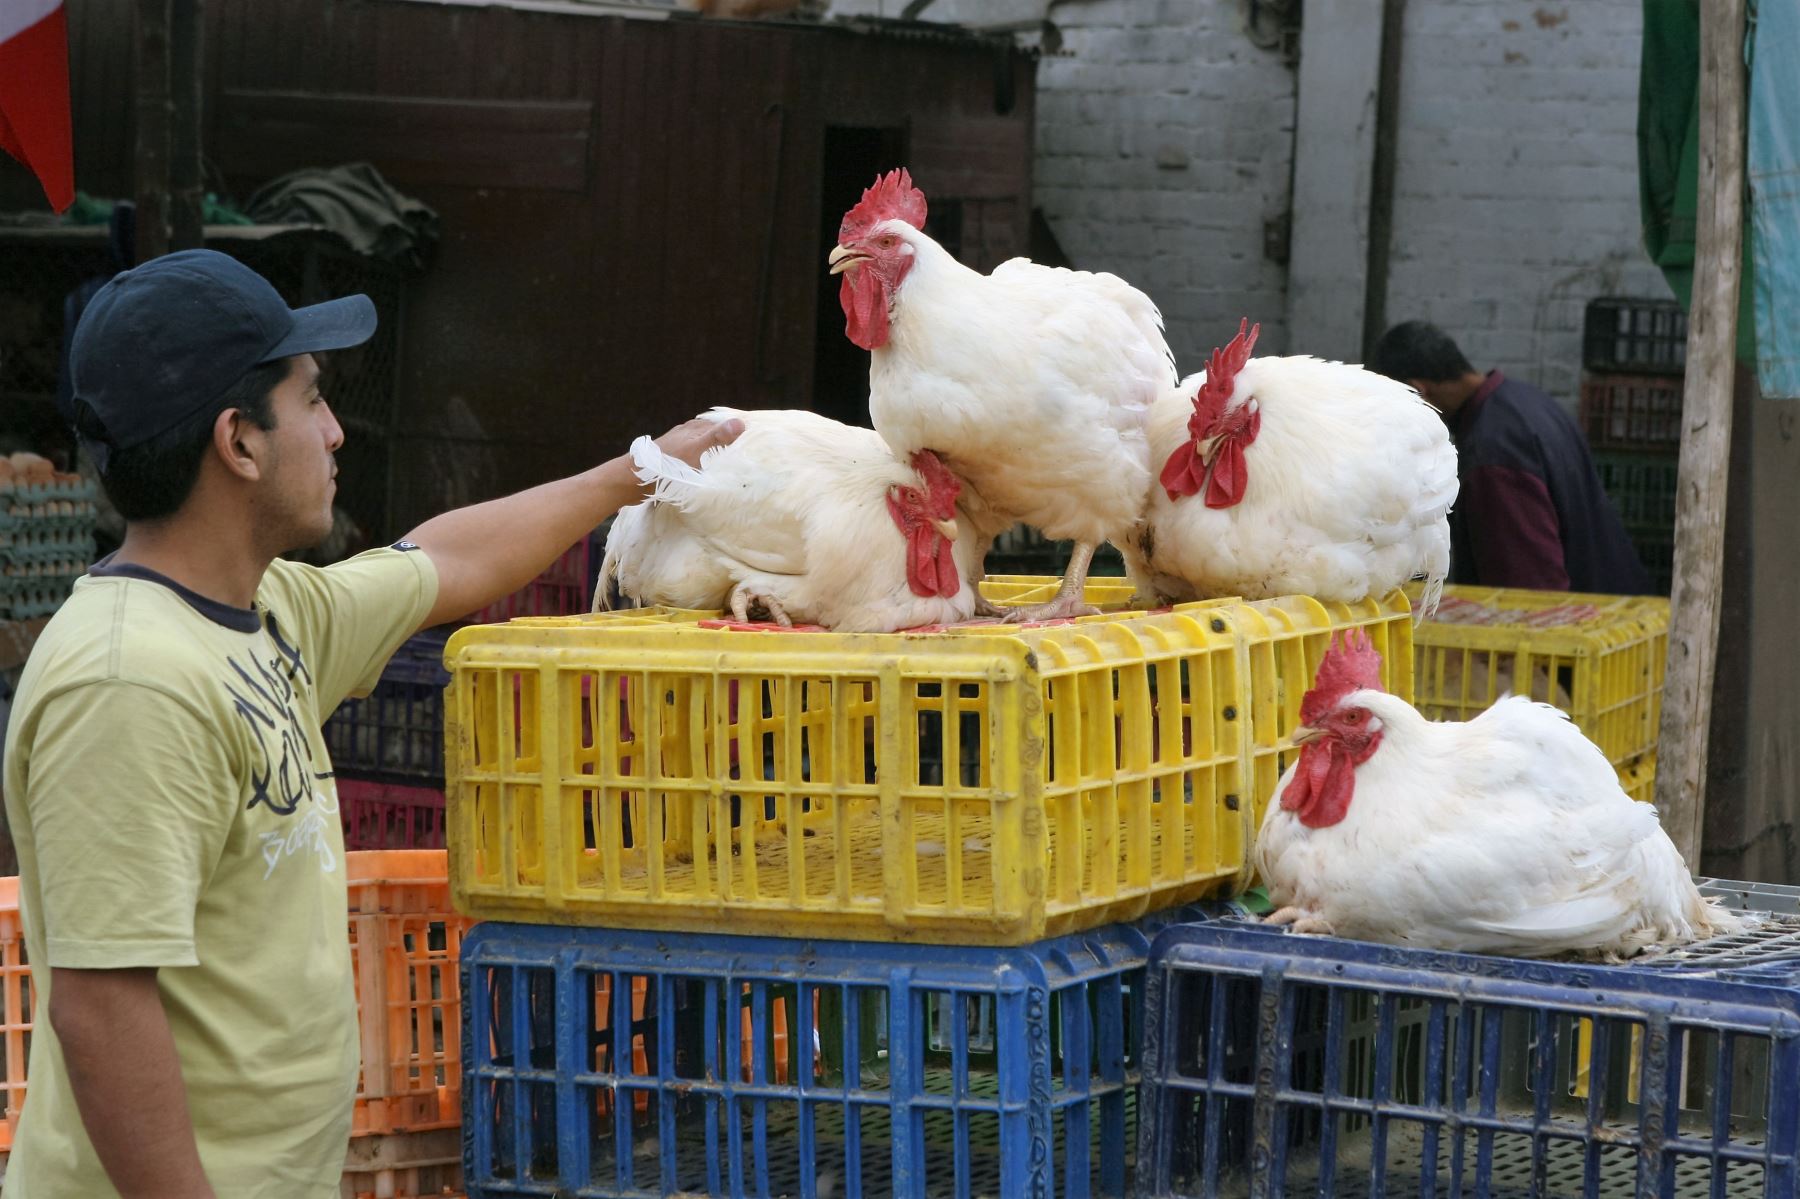 Las infección por el virus de la gripe aviar no se contagia al comer pollos u otras aves de corral. Se puede transmitir cuando la persona no tiene protección y manipula al animal enfermo (Andina)